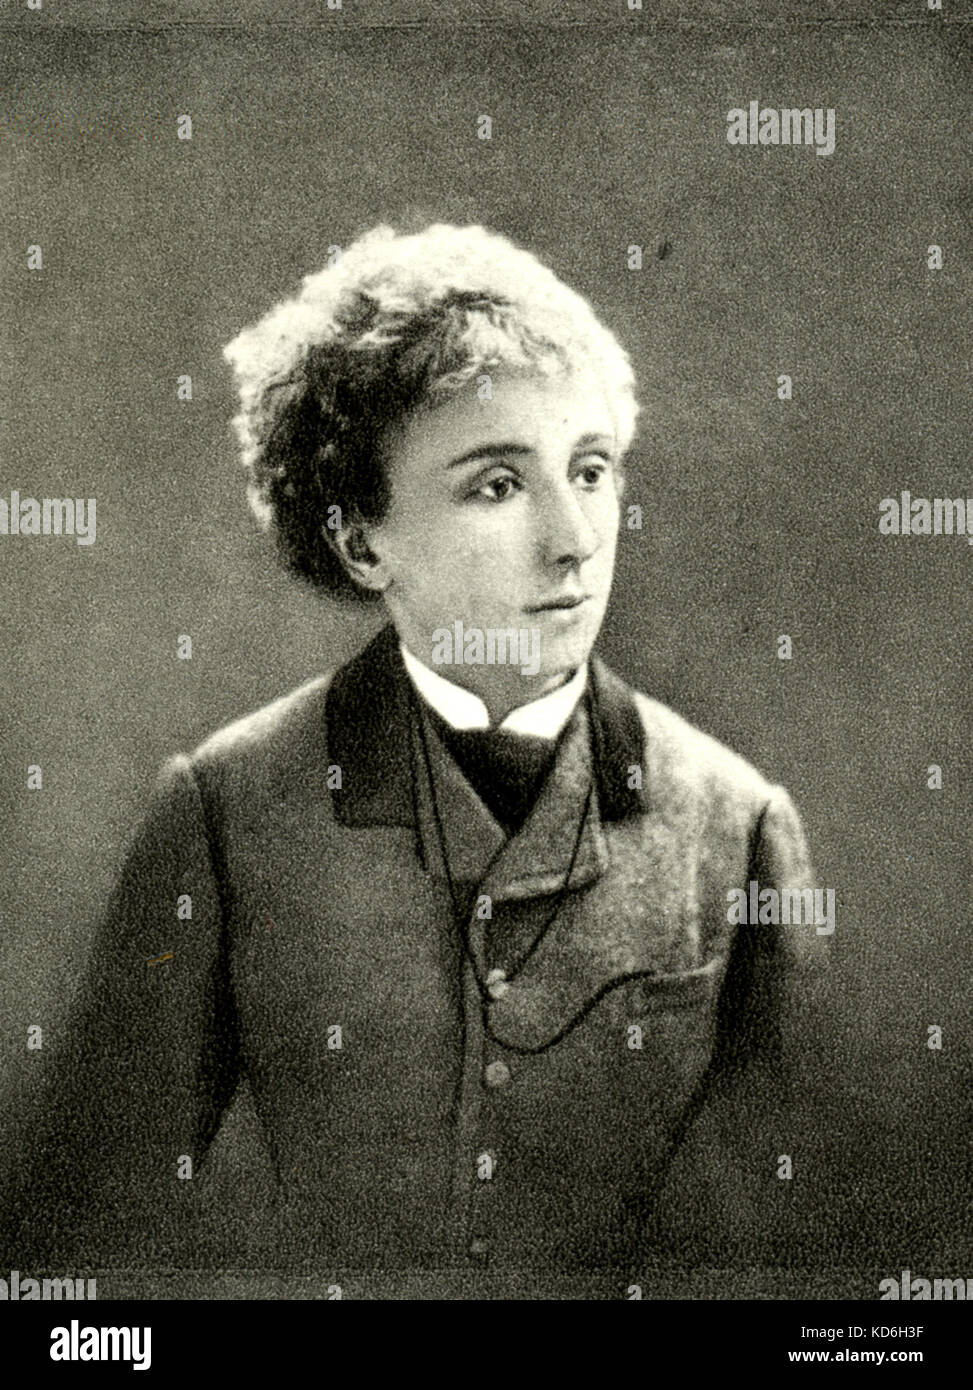 Olga Janina comme 'Madame Cesano' née Princesse Orbeliani. Liszt connexion. Liszt : pianiste et compositeur hongrois (1811-1886) Banque D'Images